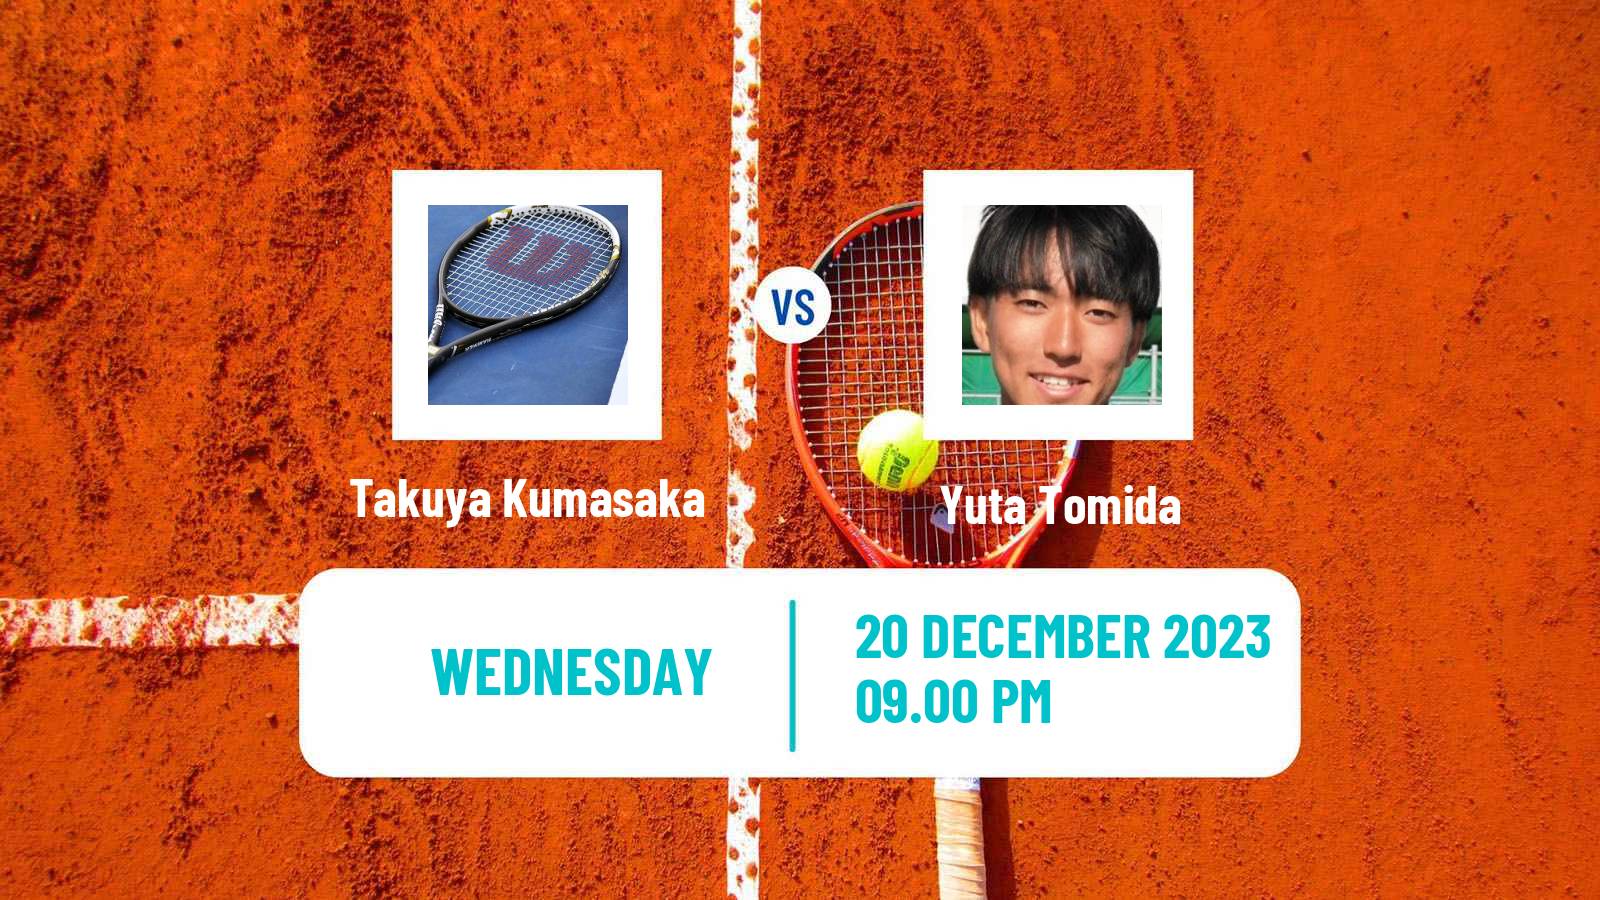 Tennis ITF M15 Yanagawa Men Takuya Kumasaka - Yuta Tomida